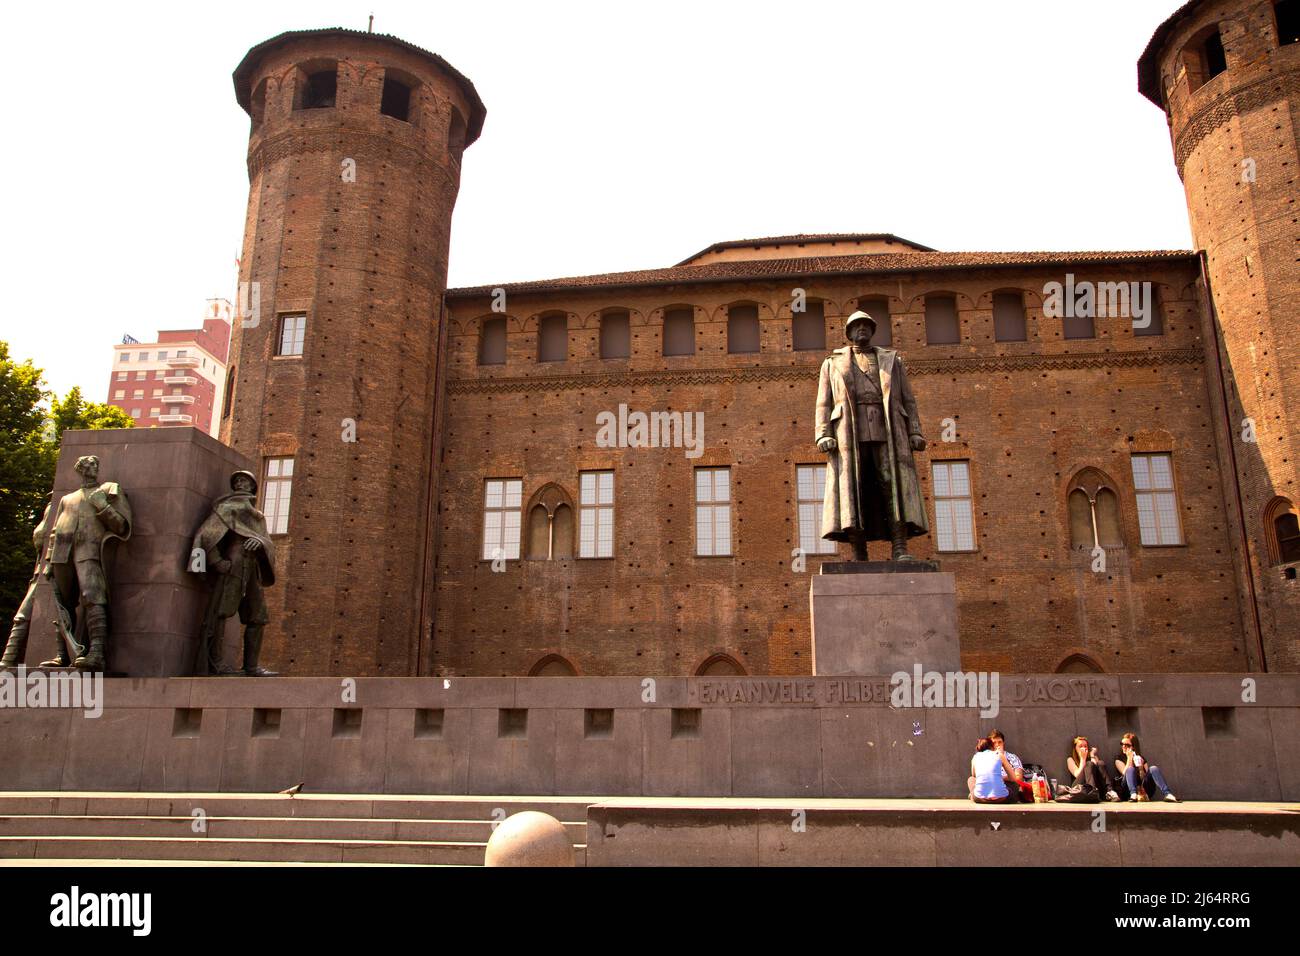 Il memoriale di Emanuele Filiberto Duca D'Aosta a Pizza Castello che commemora le opere del generale italiano durante la prima guerra mondiale. Torino Italia. Foto Stock